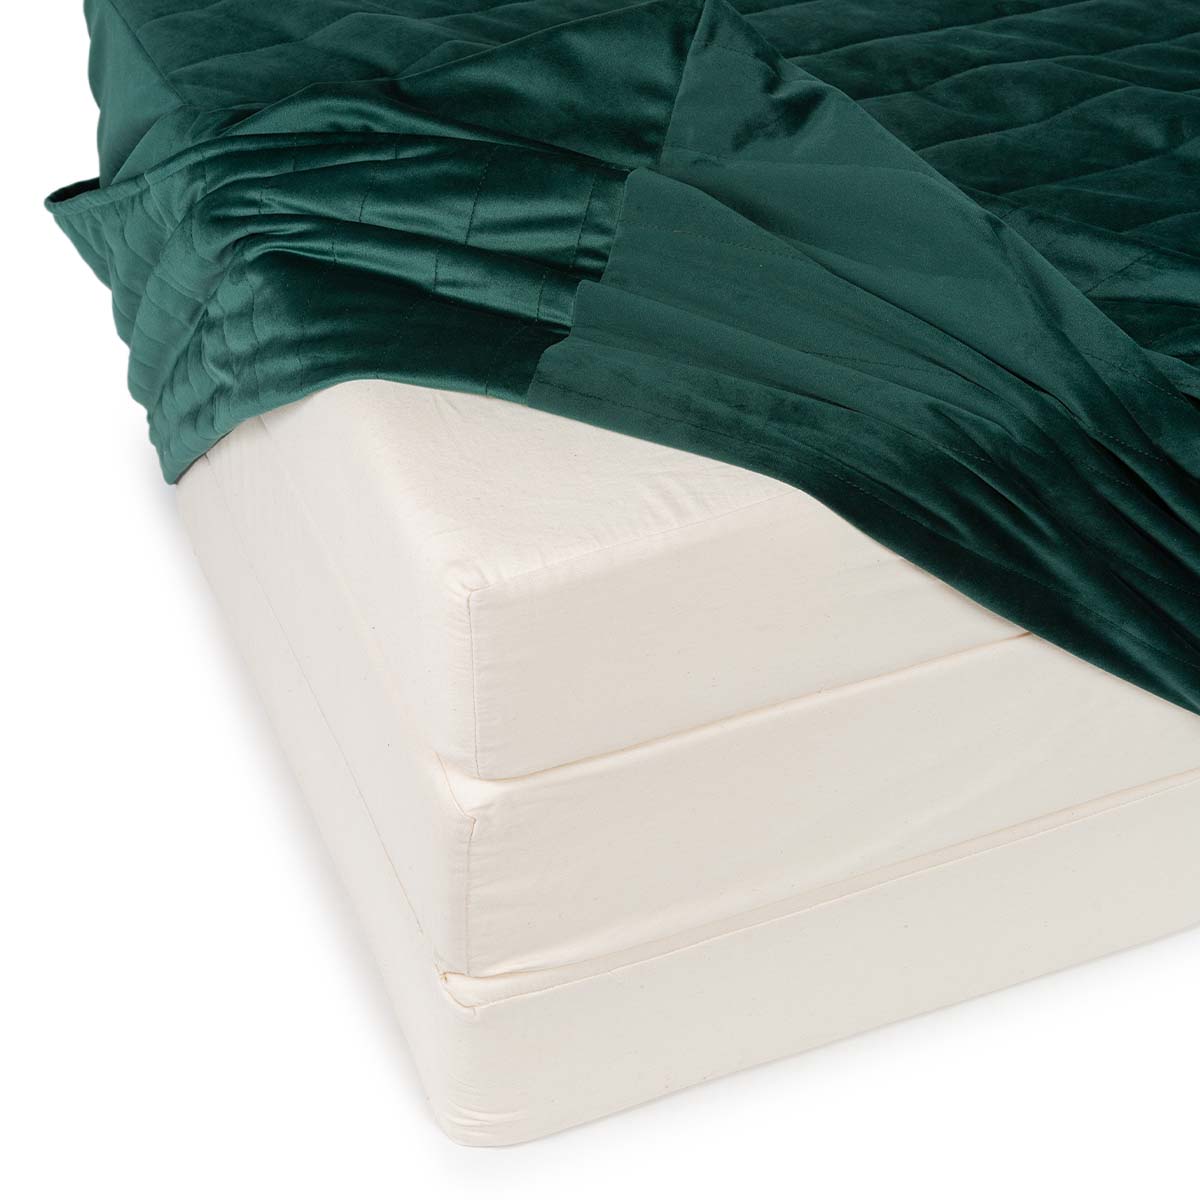 Het sleepover velvet matras in de kleur jungle green is een handig logeerbed voor vriendjes en vriendinnetjes van je kindje. Altijd een extra slaapplek met dit opvouwbare logeermatras! VanZus